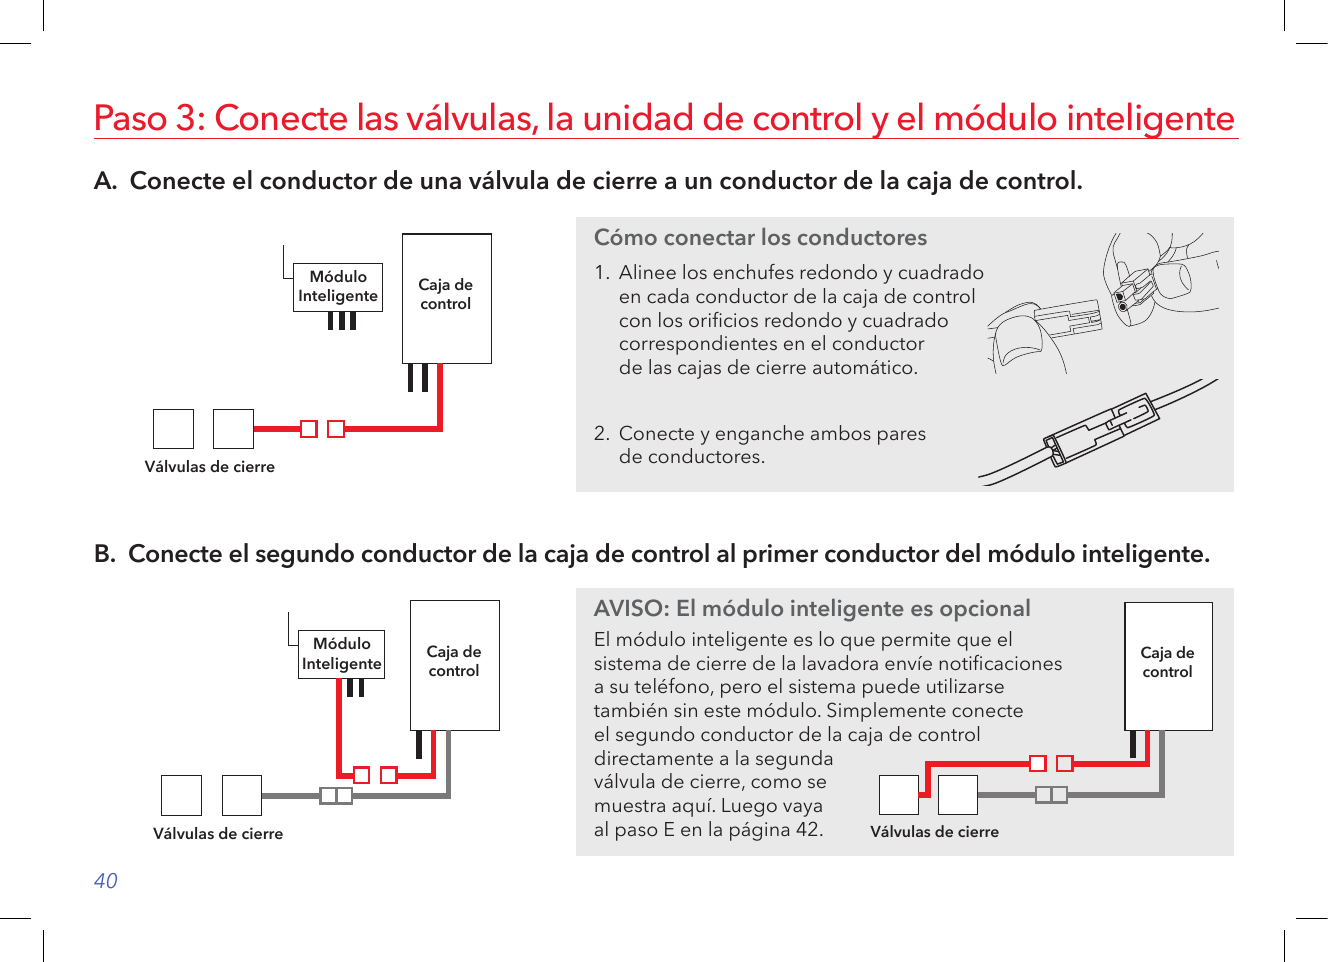 40A.  Conecte el conductor de una válvula de cierre a un conductor de la caja de control.Paso 3: Conecte las válvulas, la unidad de control y el módulo inteligenteCaja decontrolVálvulas de cierreMóduloInteligenteB.  Conecte el segundo conductor de la caja de control al primer conductor del módulo inteligente.Caja decontrolVálvulas de cierreMóduloInteligenteCómo conectar los conductores1.  Alinee los enchufes redondo y cuadrado en cada conductor de la caja de control con los oricios redondo y cuadrado correspondientes en el conductor  de las cajas de cierre automático.2.  Conecte y enganche ambos pares  de conductores.AVISO: El módulo inteligente es opcionalEl módulo inteligente es lo que permite que el  sistema de cierre de la lavadora envíe noticaciones  a su teléfono, pero el sistema puede utilizarse  también sin este módulo. Simplemente conecte  el segundo conductor de la caja de control directamente a la segunda válvula de cierre, como se muestra aquí. Luego vaya  al paso E en la página 42.Caja decontrolVálvulas de cierre